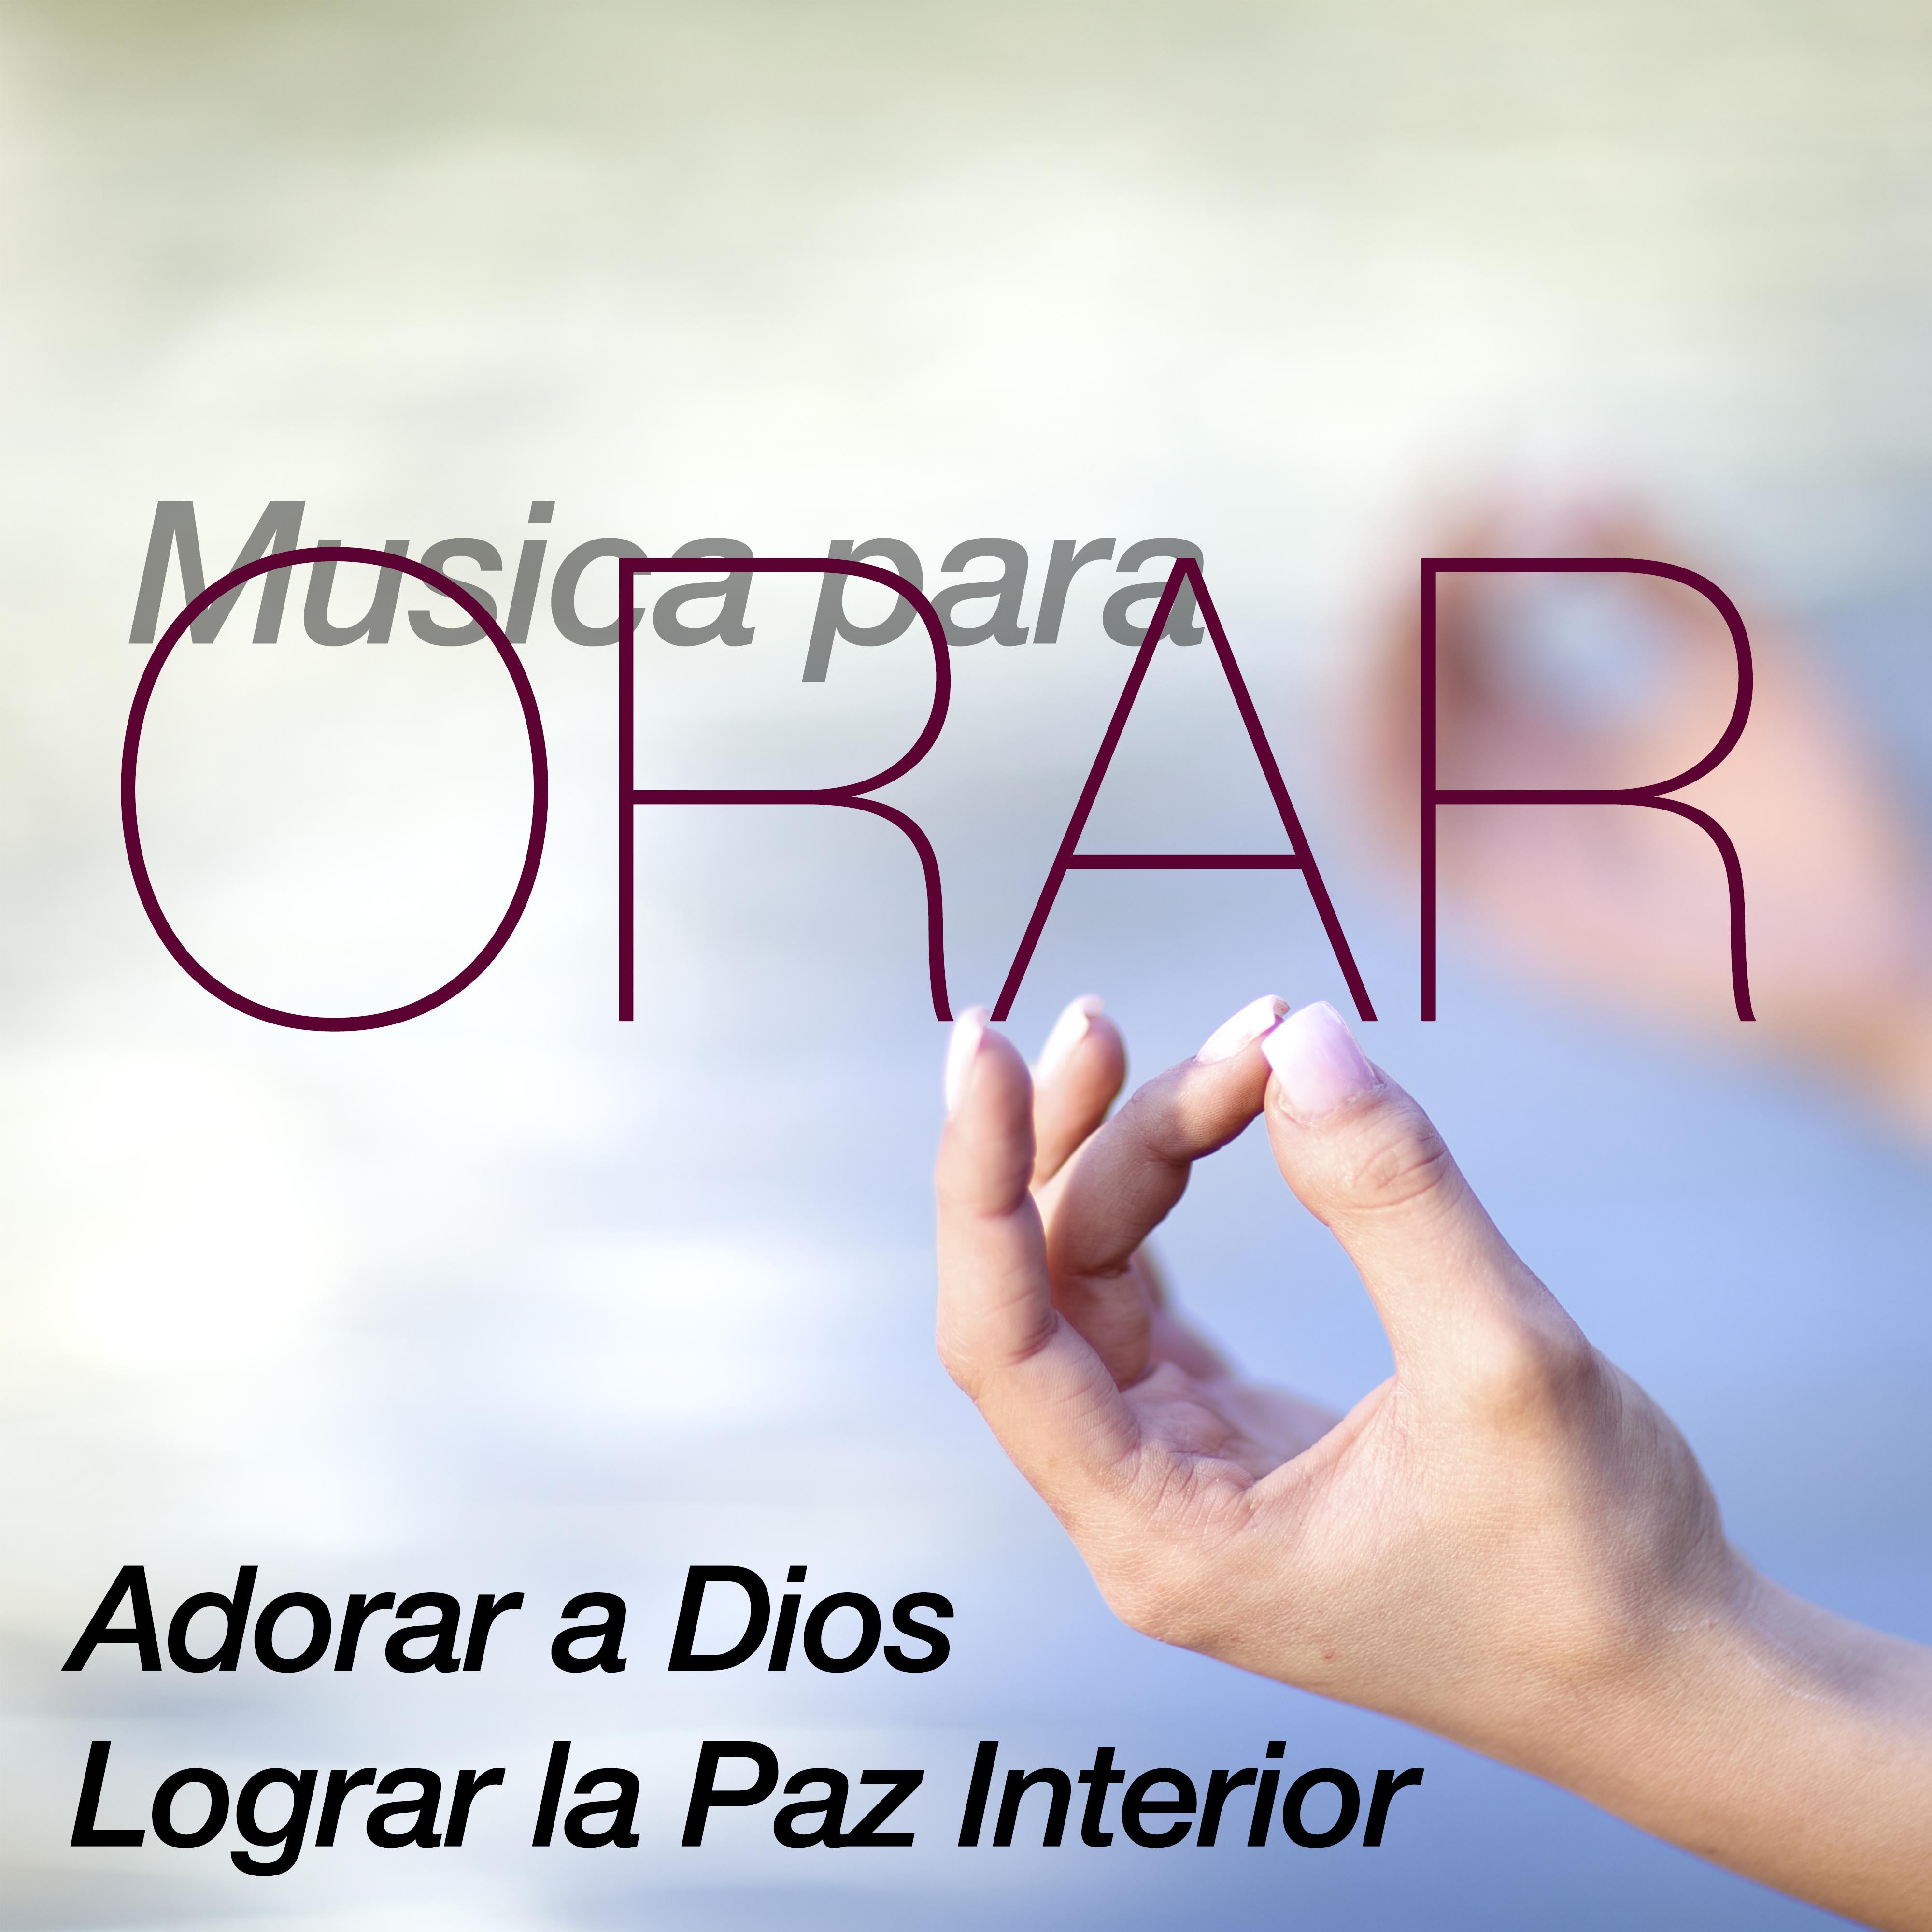 Musica para Orar y Meditar, Buscar y Adorar a Dios y Lograr la Paz Interior